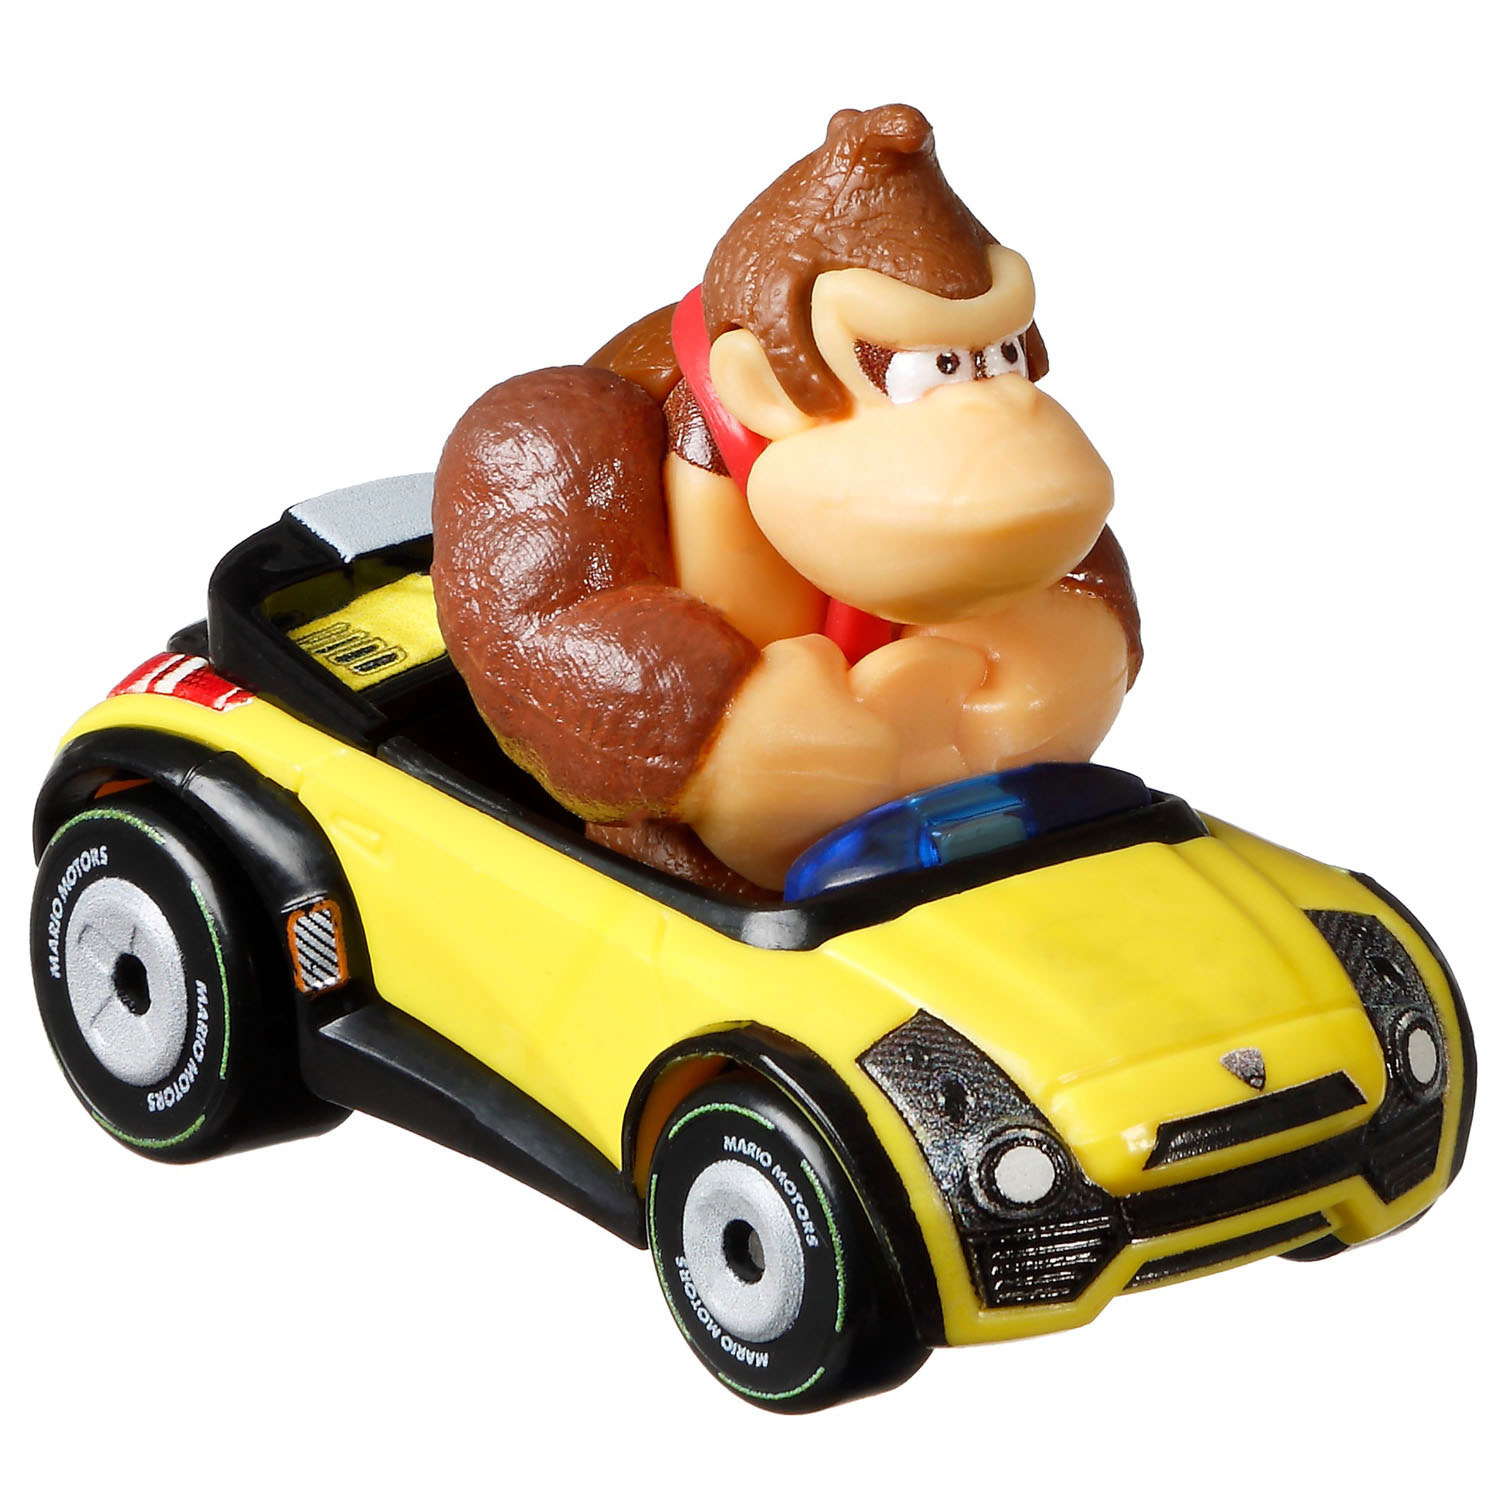 Hot Wheels Mario Kart Die-cast Auto - Set 1